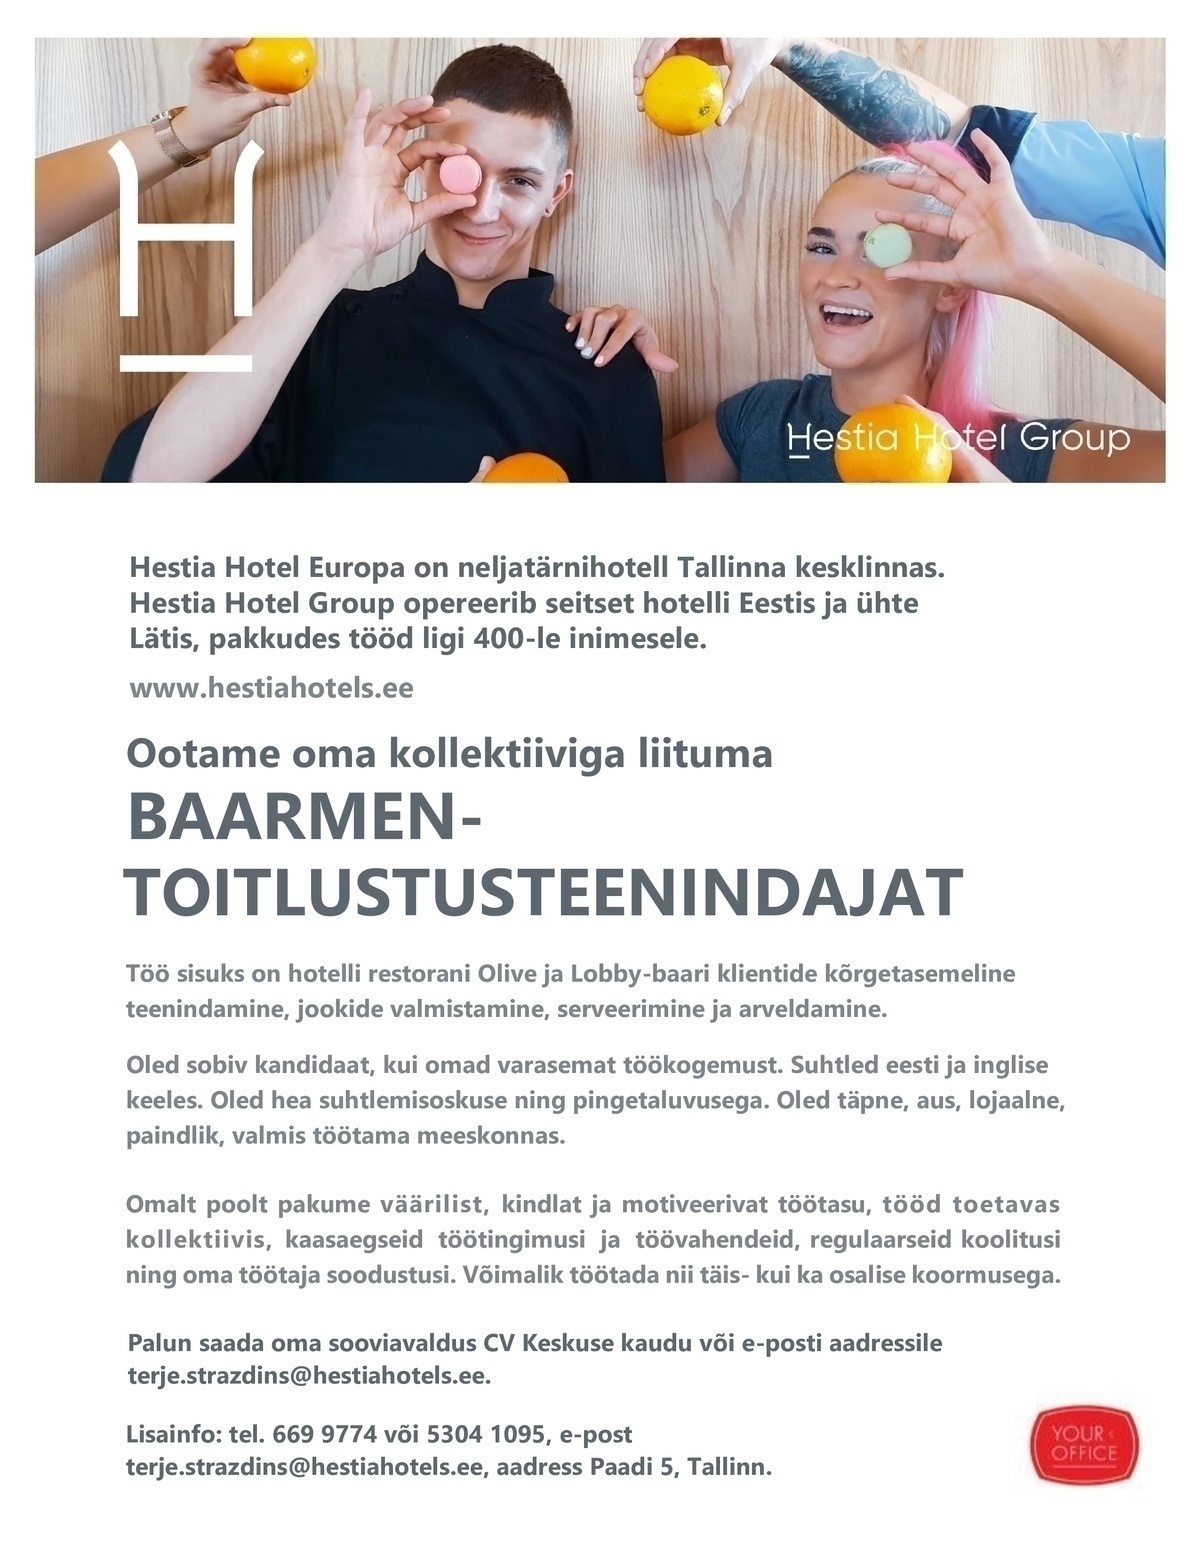 Hestia Hotel Europa Baarmen-toitlustusteenindaja (Hestia Hotel Europa) osalise- või täiskoormusega töökoht